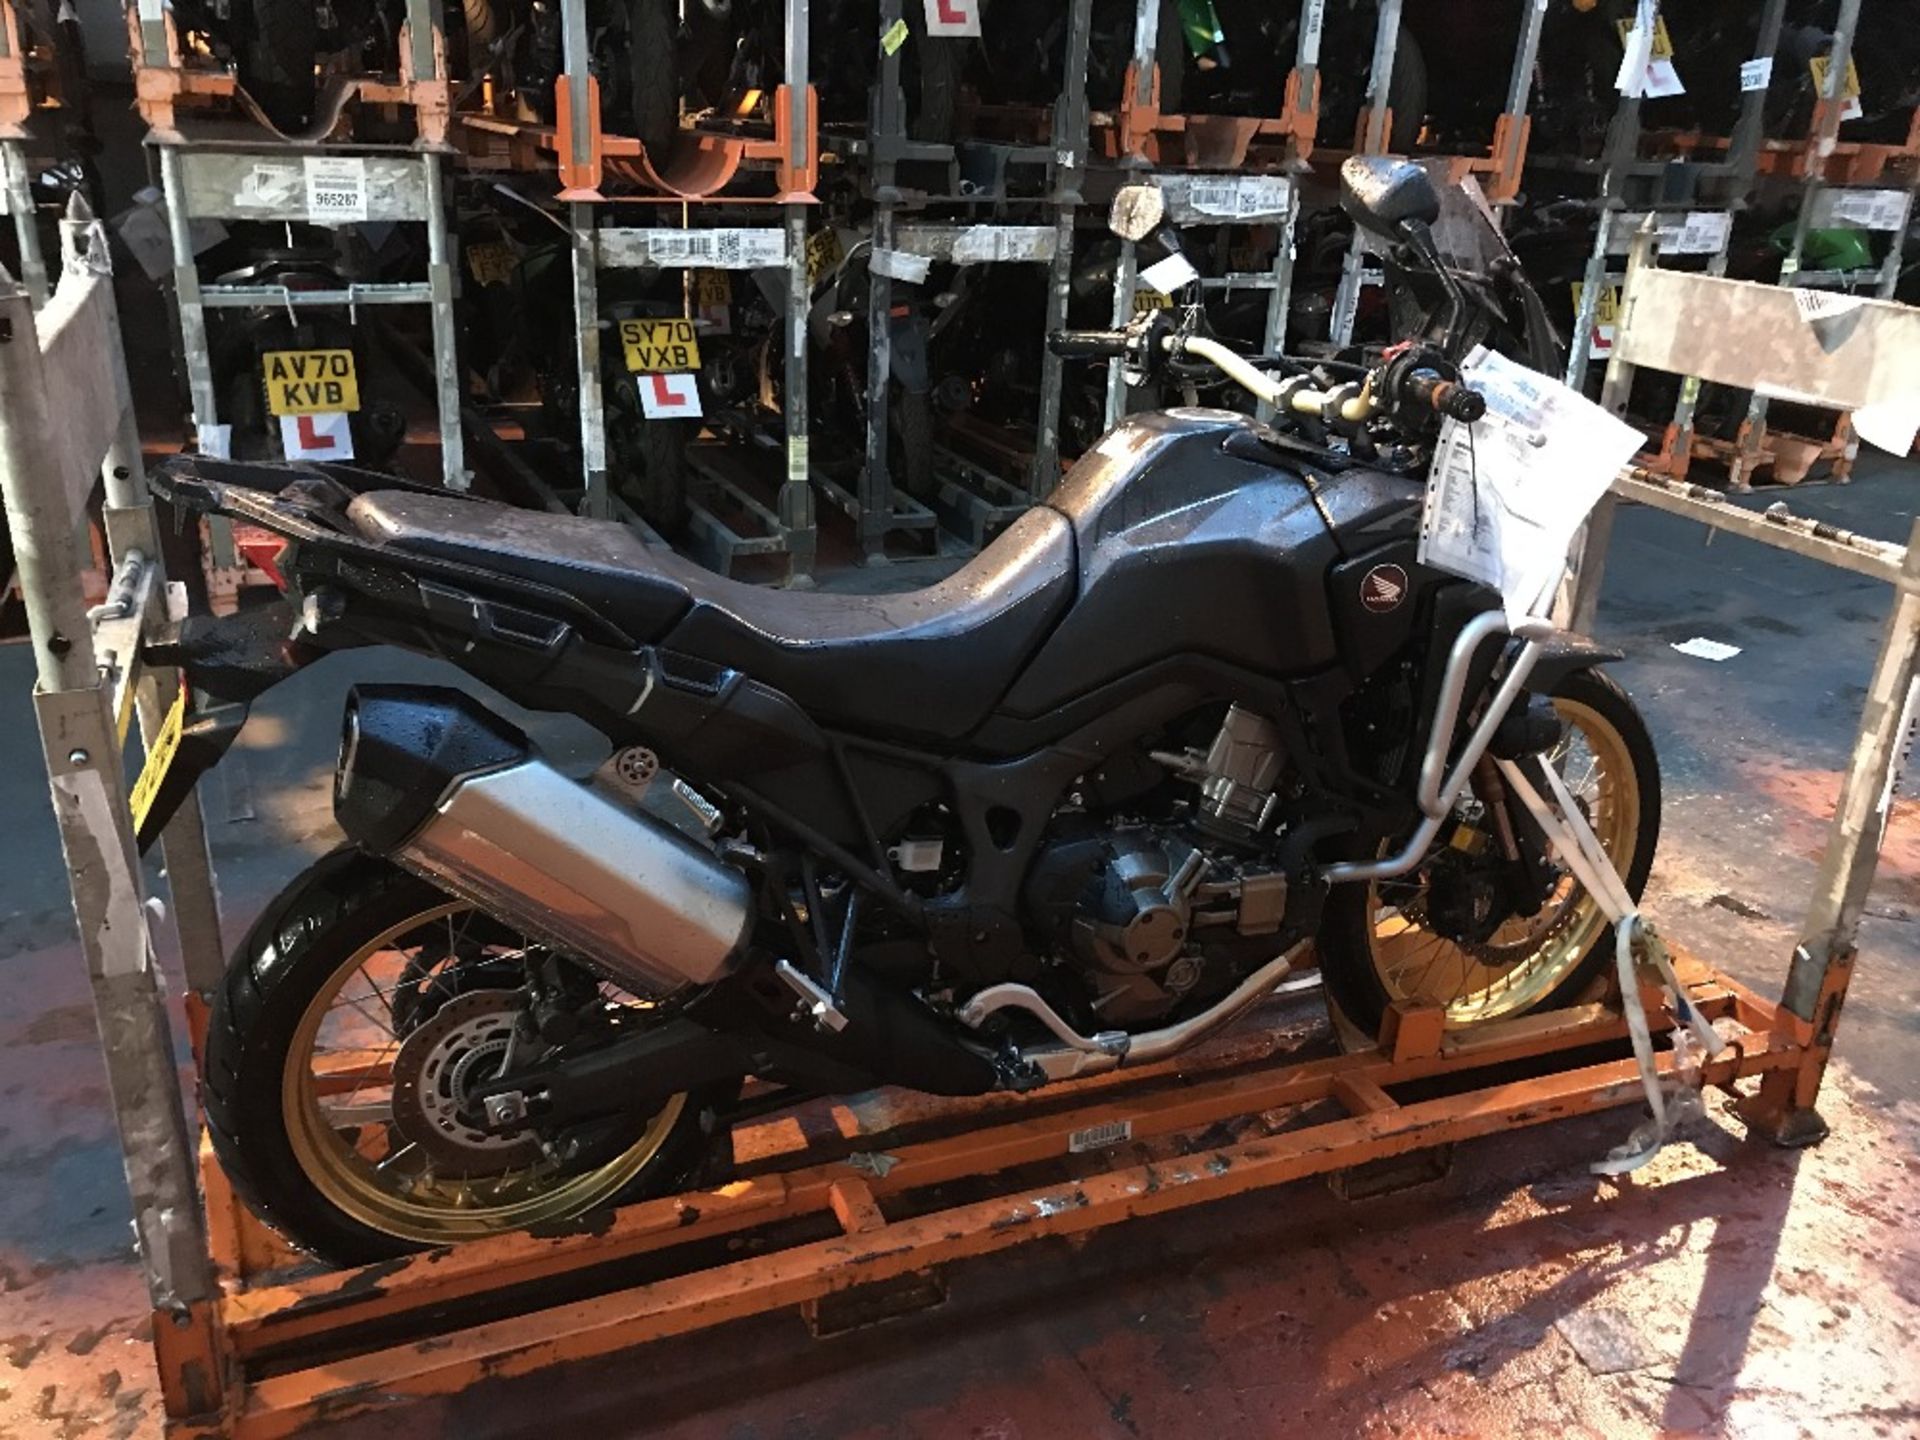 AU19 NZP Honda CRF 1000 D-K Motorcycle - Image 3 of 23